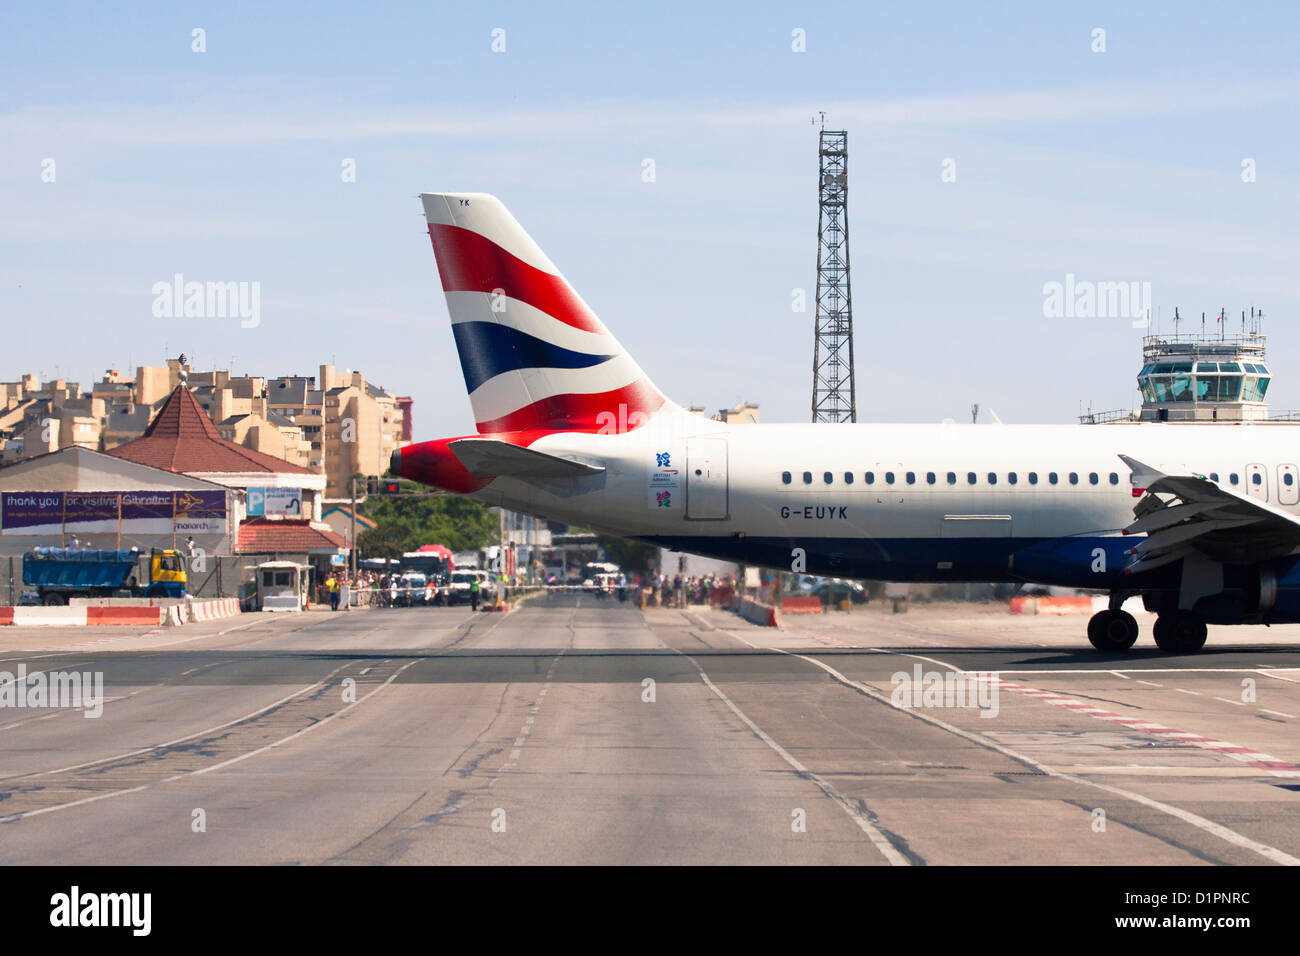 British Airways Airbus landing at Gibraltar Airport. 2 July 2012, Gibraltar, UK. Stock Photo